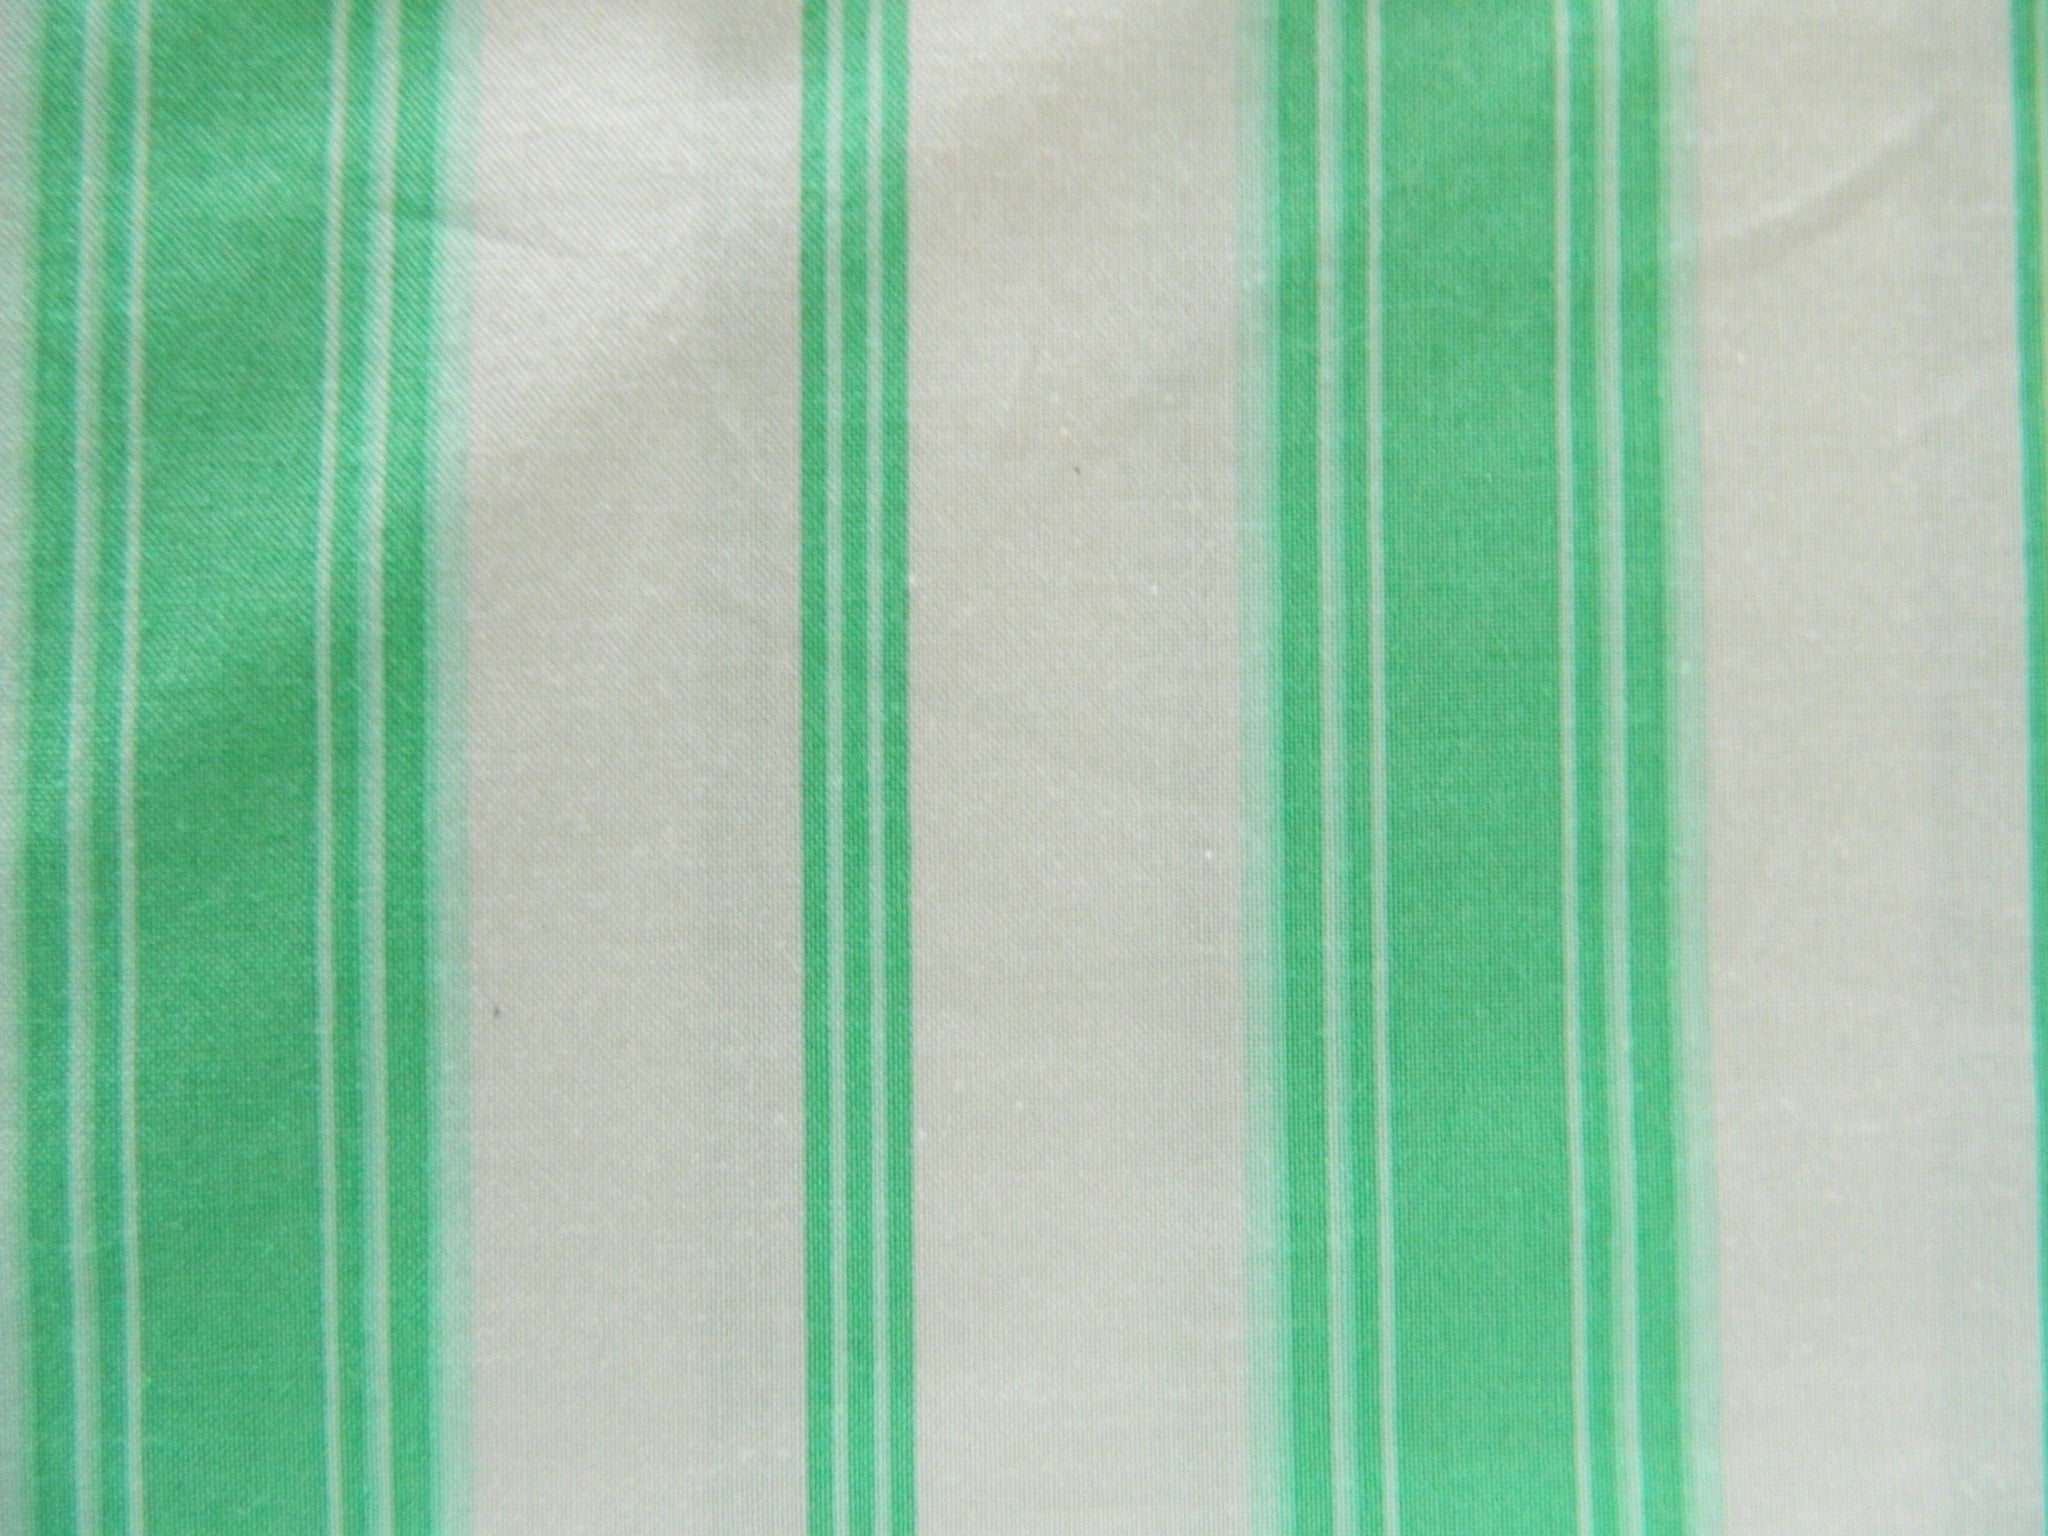 Stripes Vm34 Sugary stripes